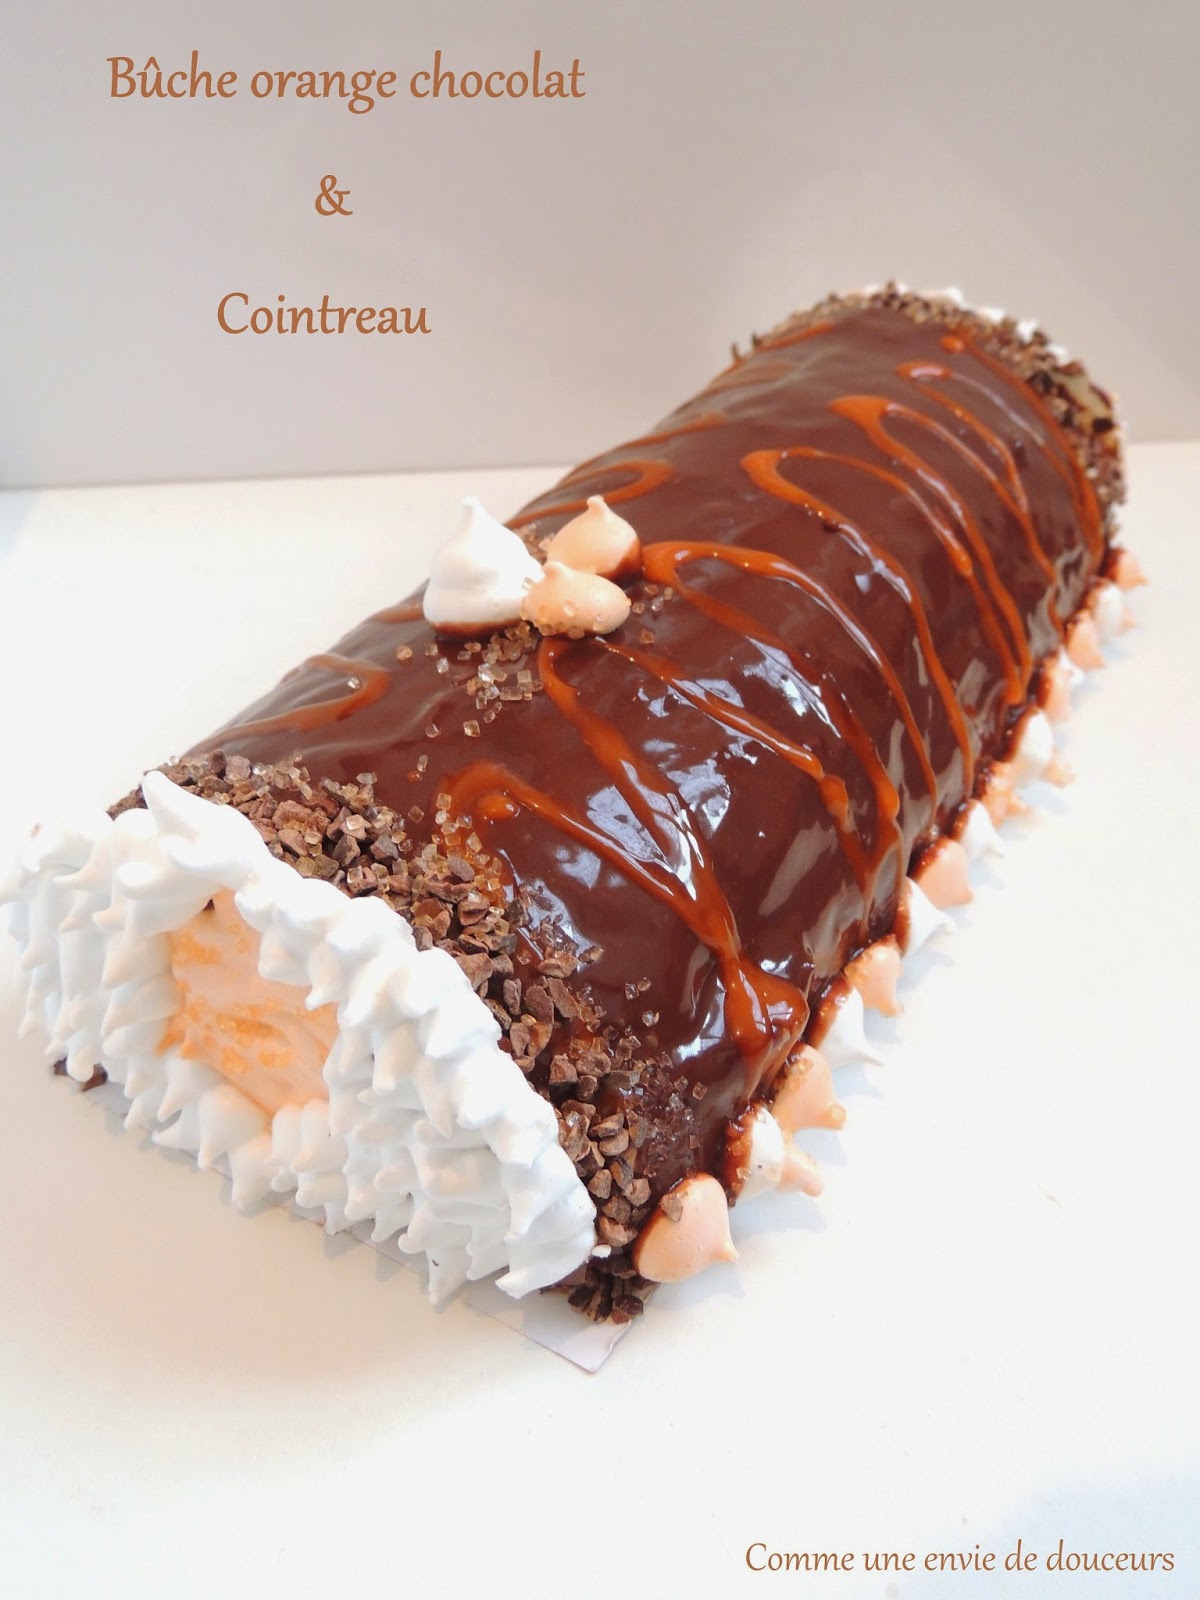 Bûche roulée chocolat orange & Cointreau – Rolled log orange chocolate & Cointreau